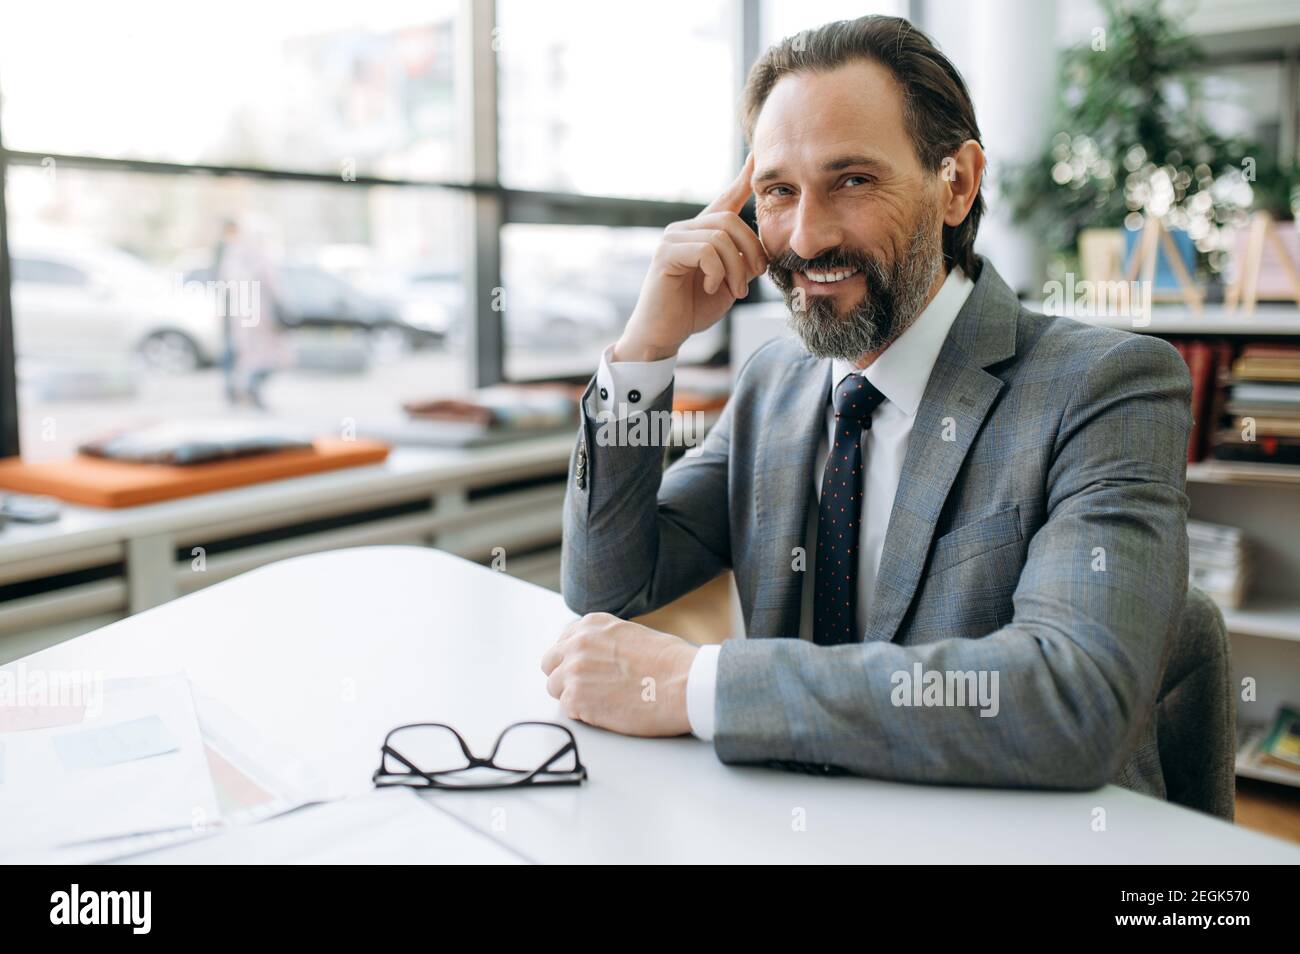 Ritratto di felice imprenditore di successo sul posto di lavoro. Un uomo d'affari sorridente di mezza età si siede alla scrivania, guarda la macchina fotografica, indossando un abito elegante e formale Foto Stock